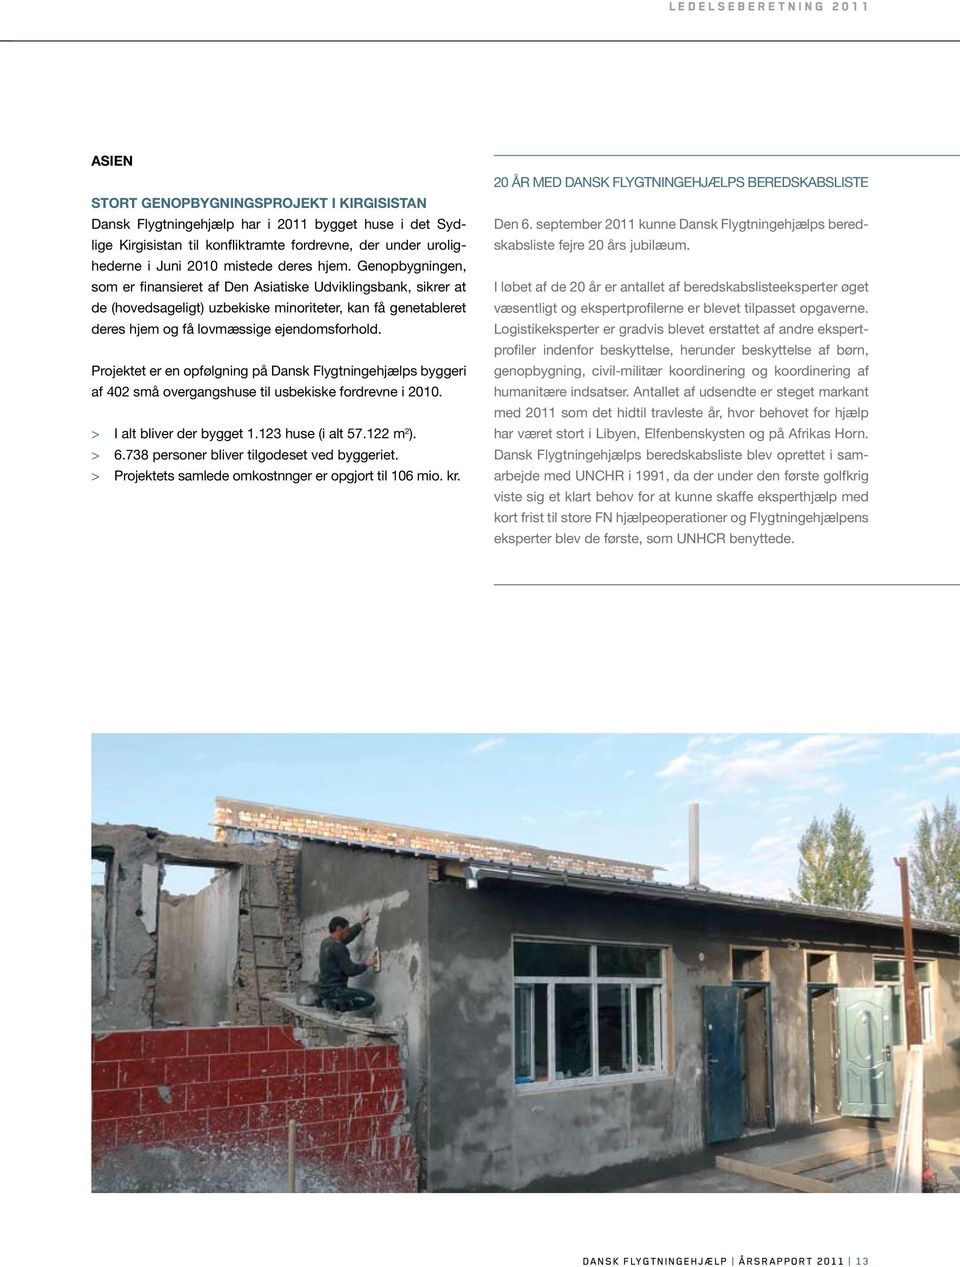 Genopbygningen, som er finansieret af Den Asiatiske Udviklingsbank, sikrer at de (hovedsageligt) uzbekiske minoriteter, kan få genetableret deres hjem og få lovmæssige ejendomsforhold.